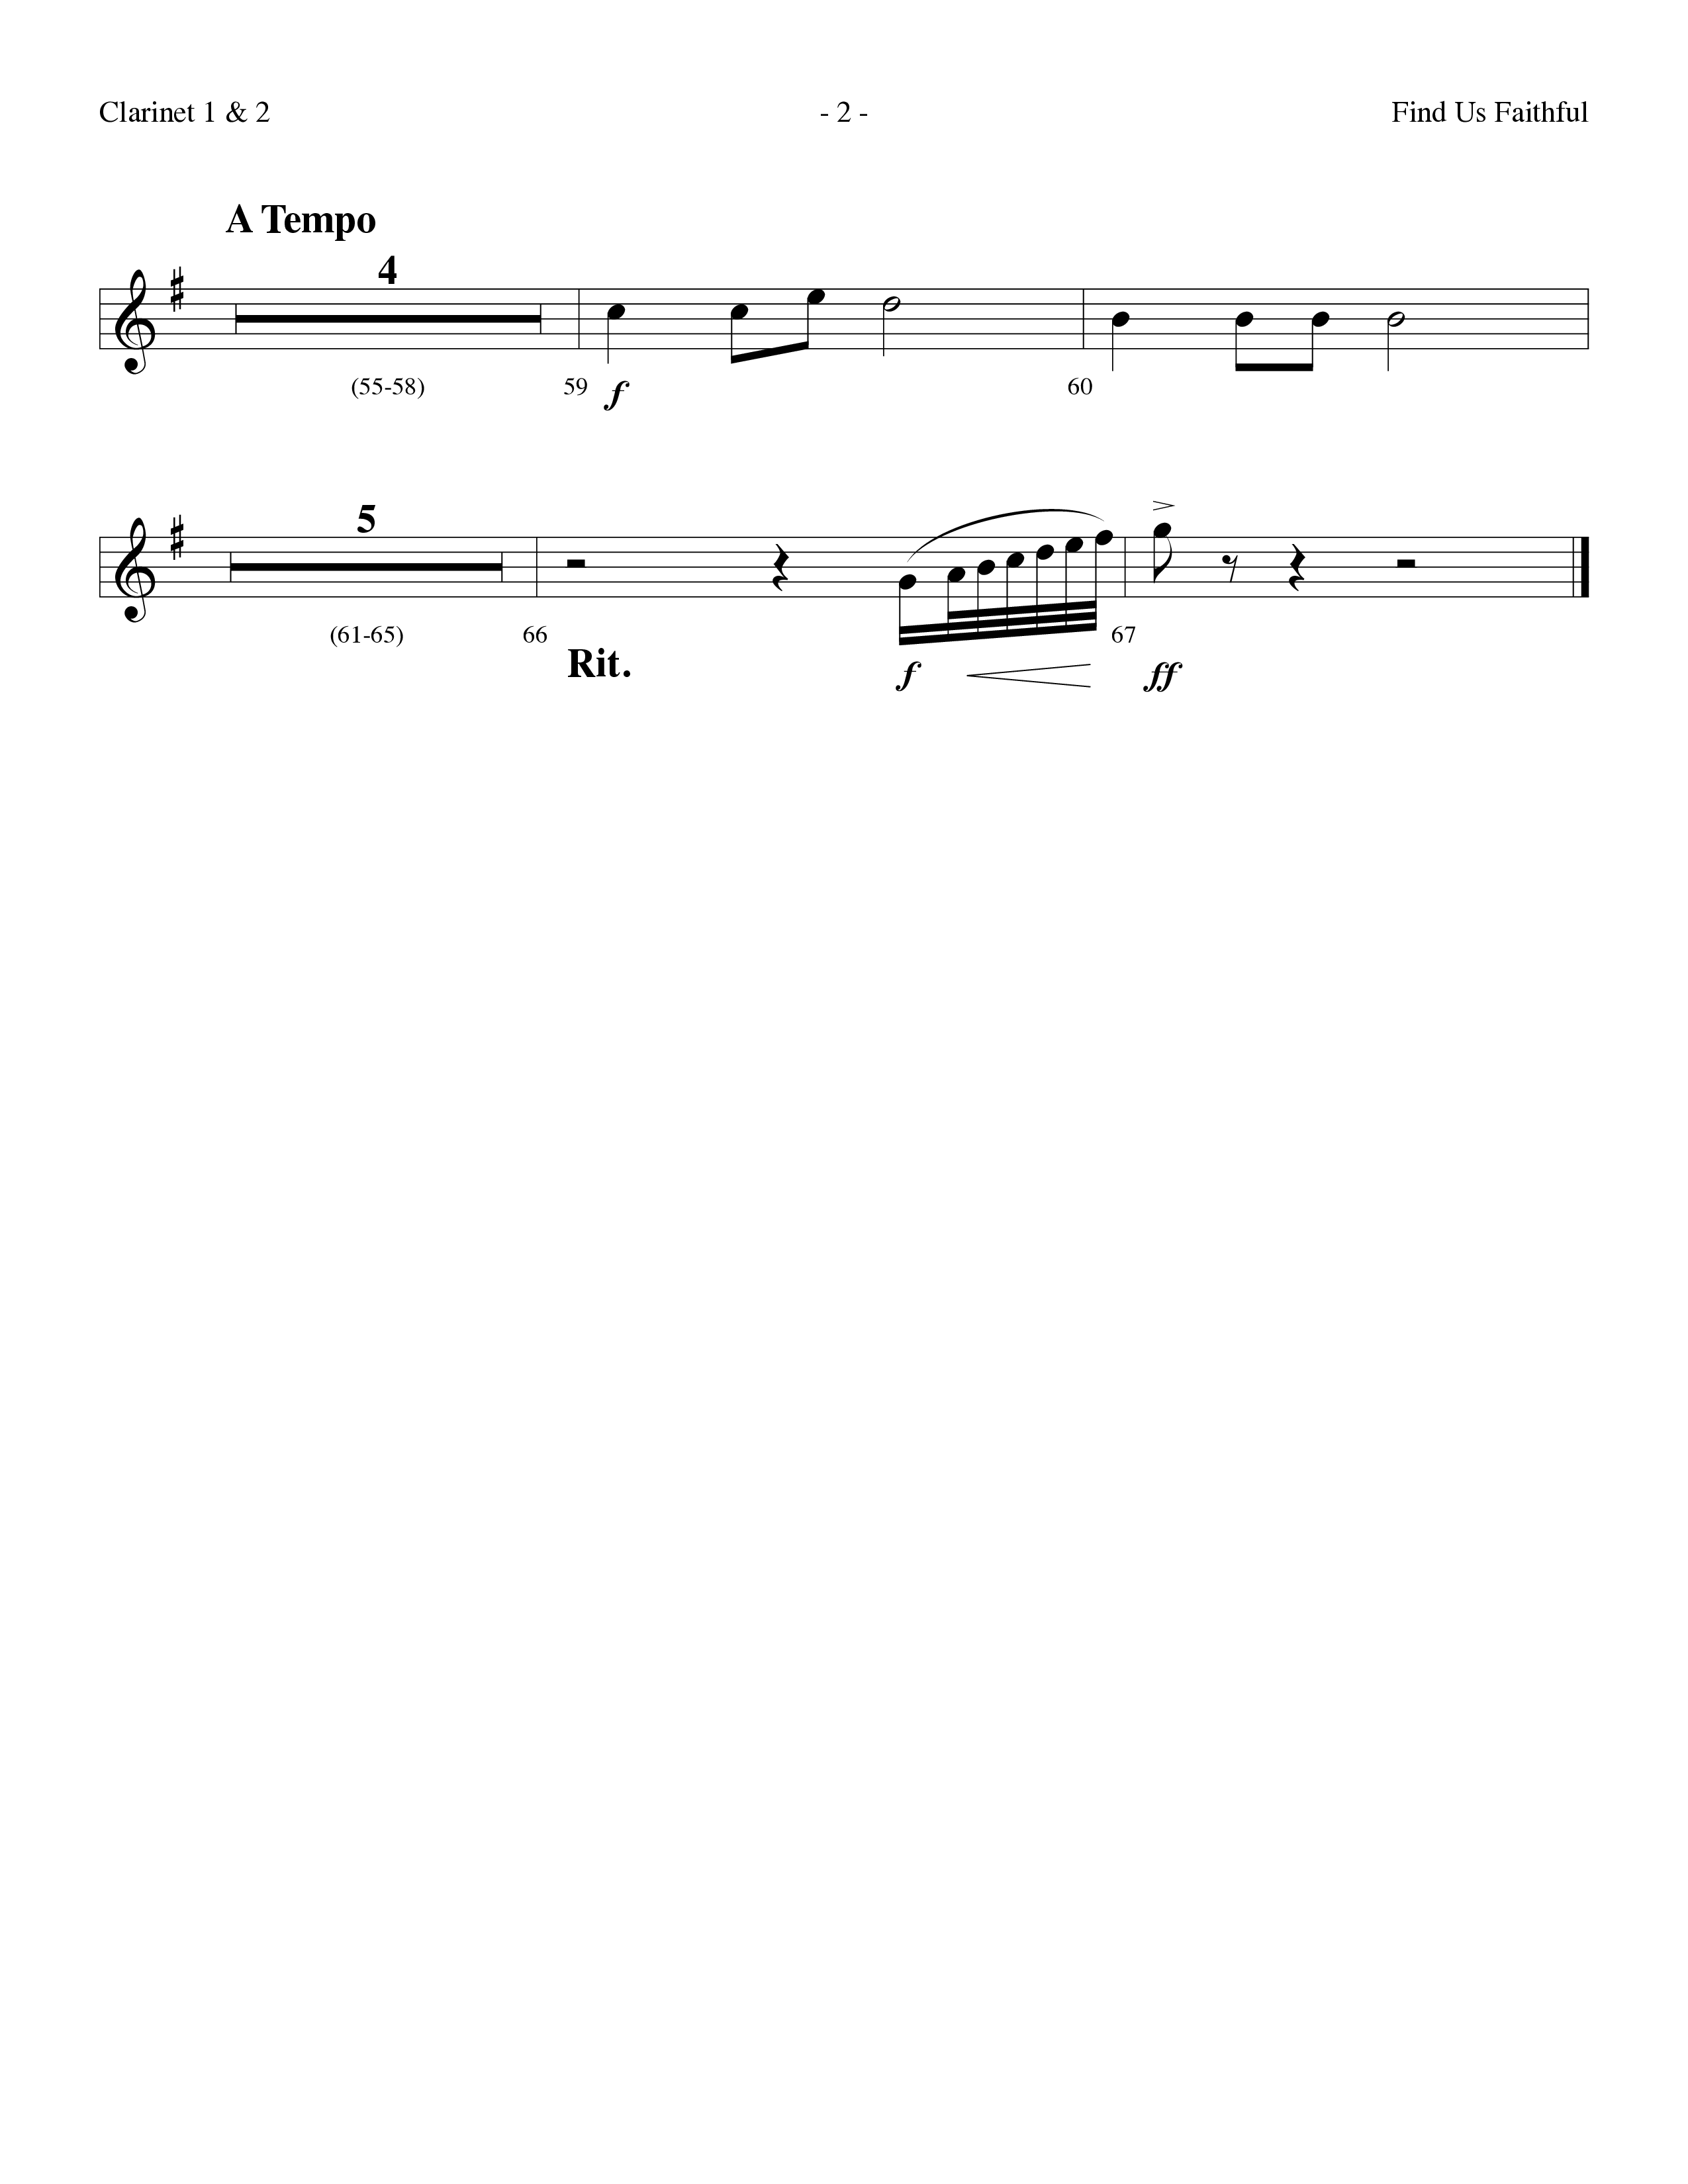 Find Us Faithful (Choral Anthem SATB) Clarinet 1/2 (Lifeway Choral / Arr. Dennis Allen)